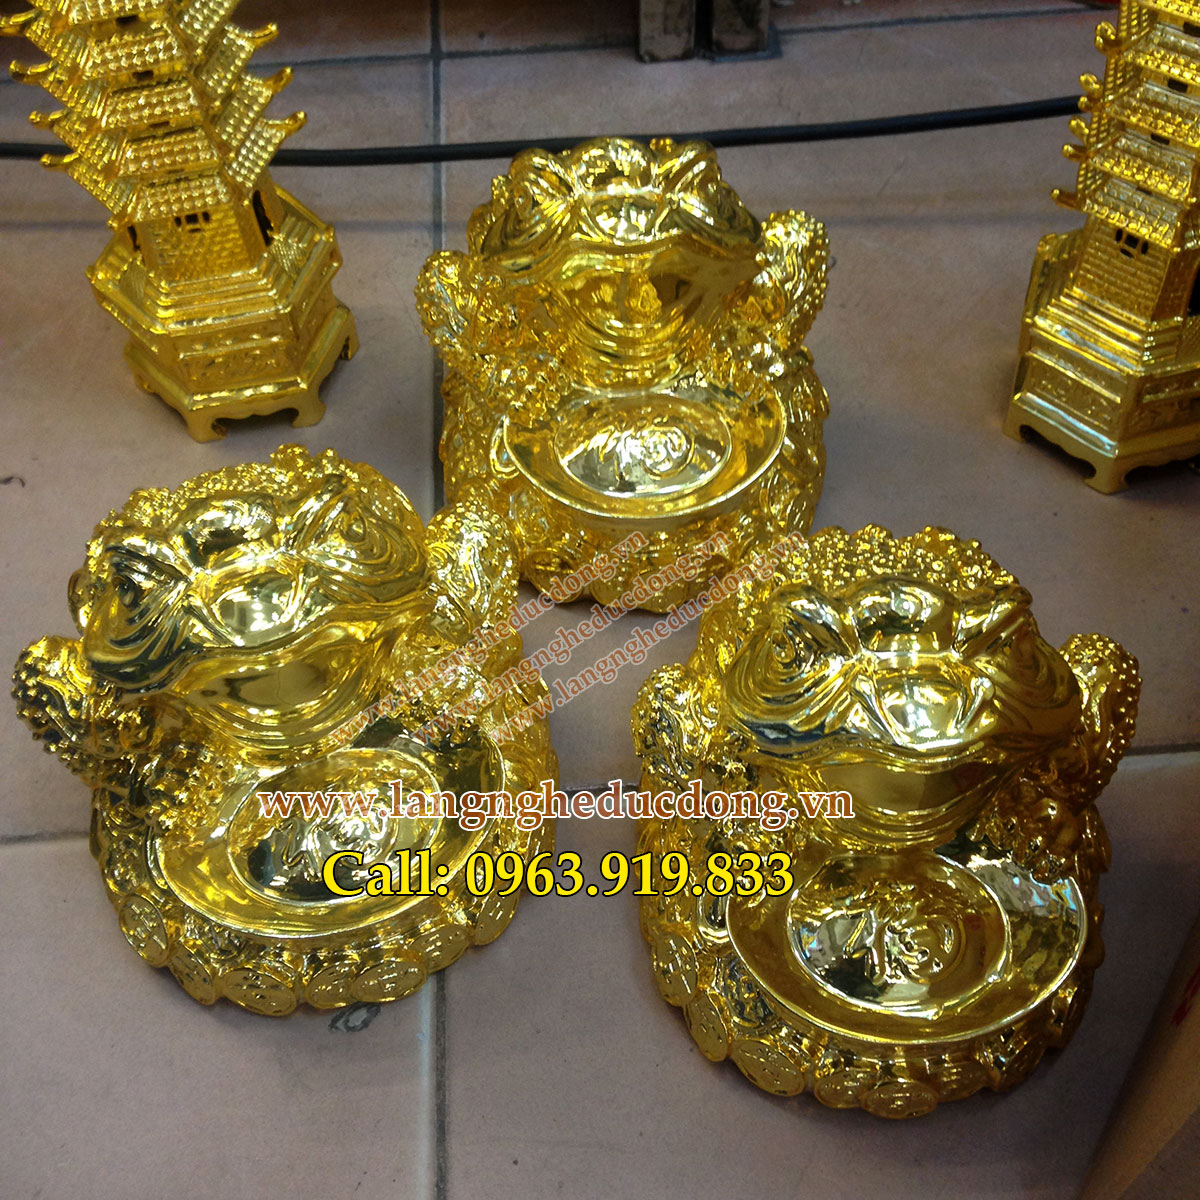 langngheducdong.vn - Cóc ba chân ngậm tiền phong thủy mạ vàng cao cấp cao 15cm